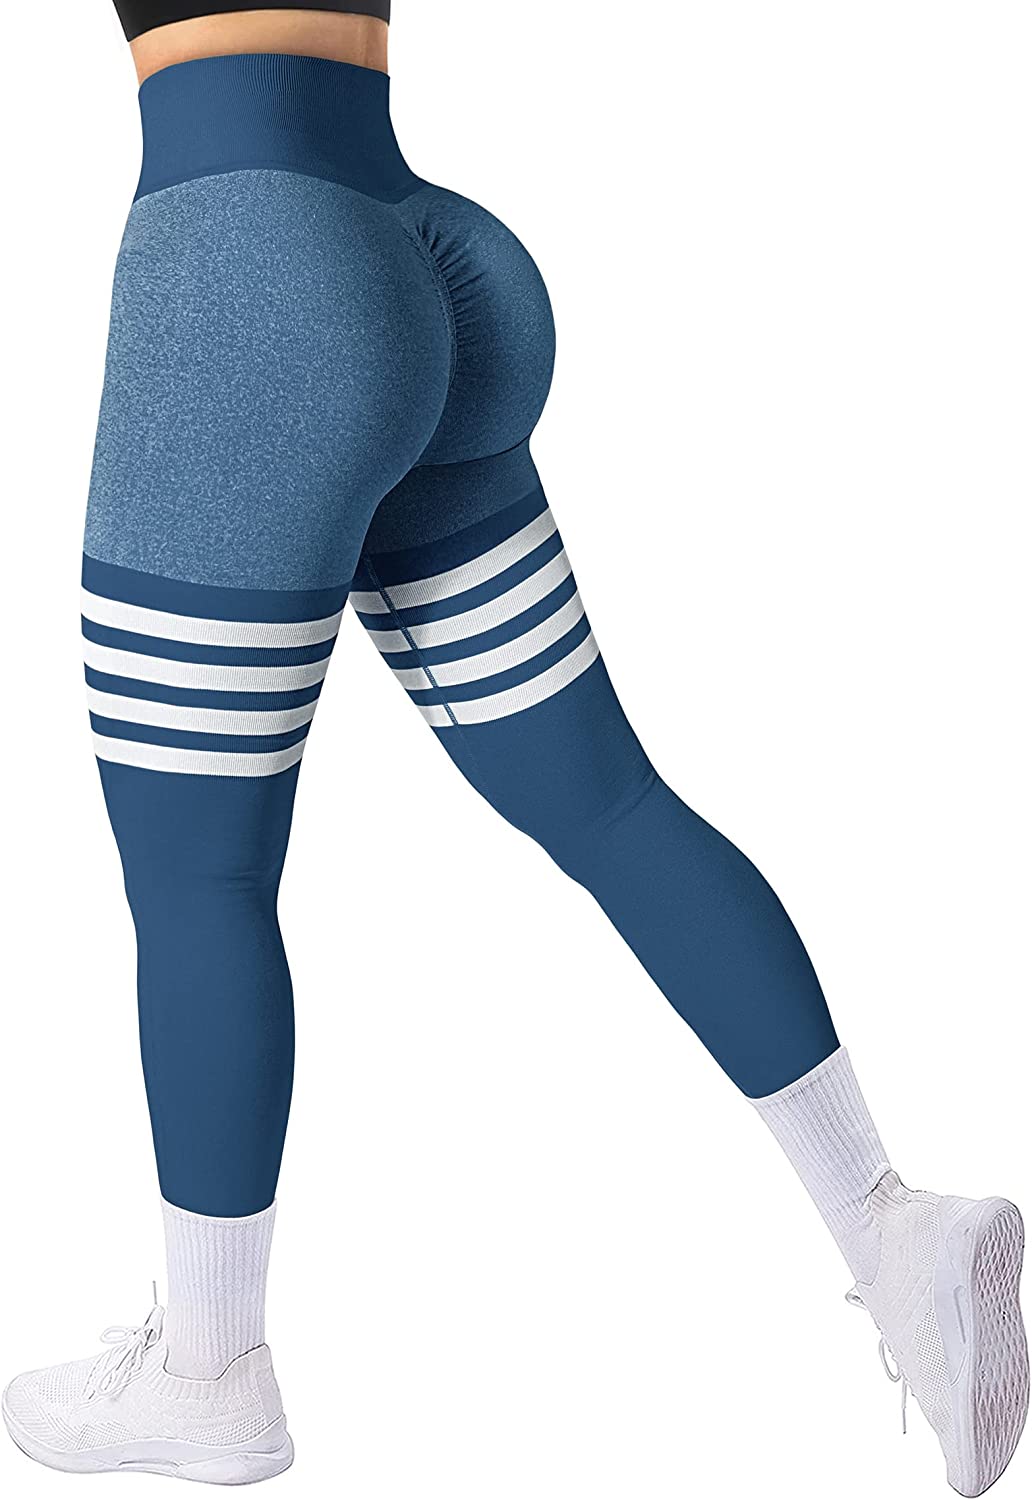 A AGROSTE Workout Leggings for Women Seamless Scrunch Butt